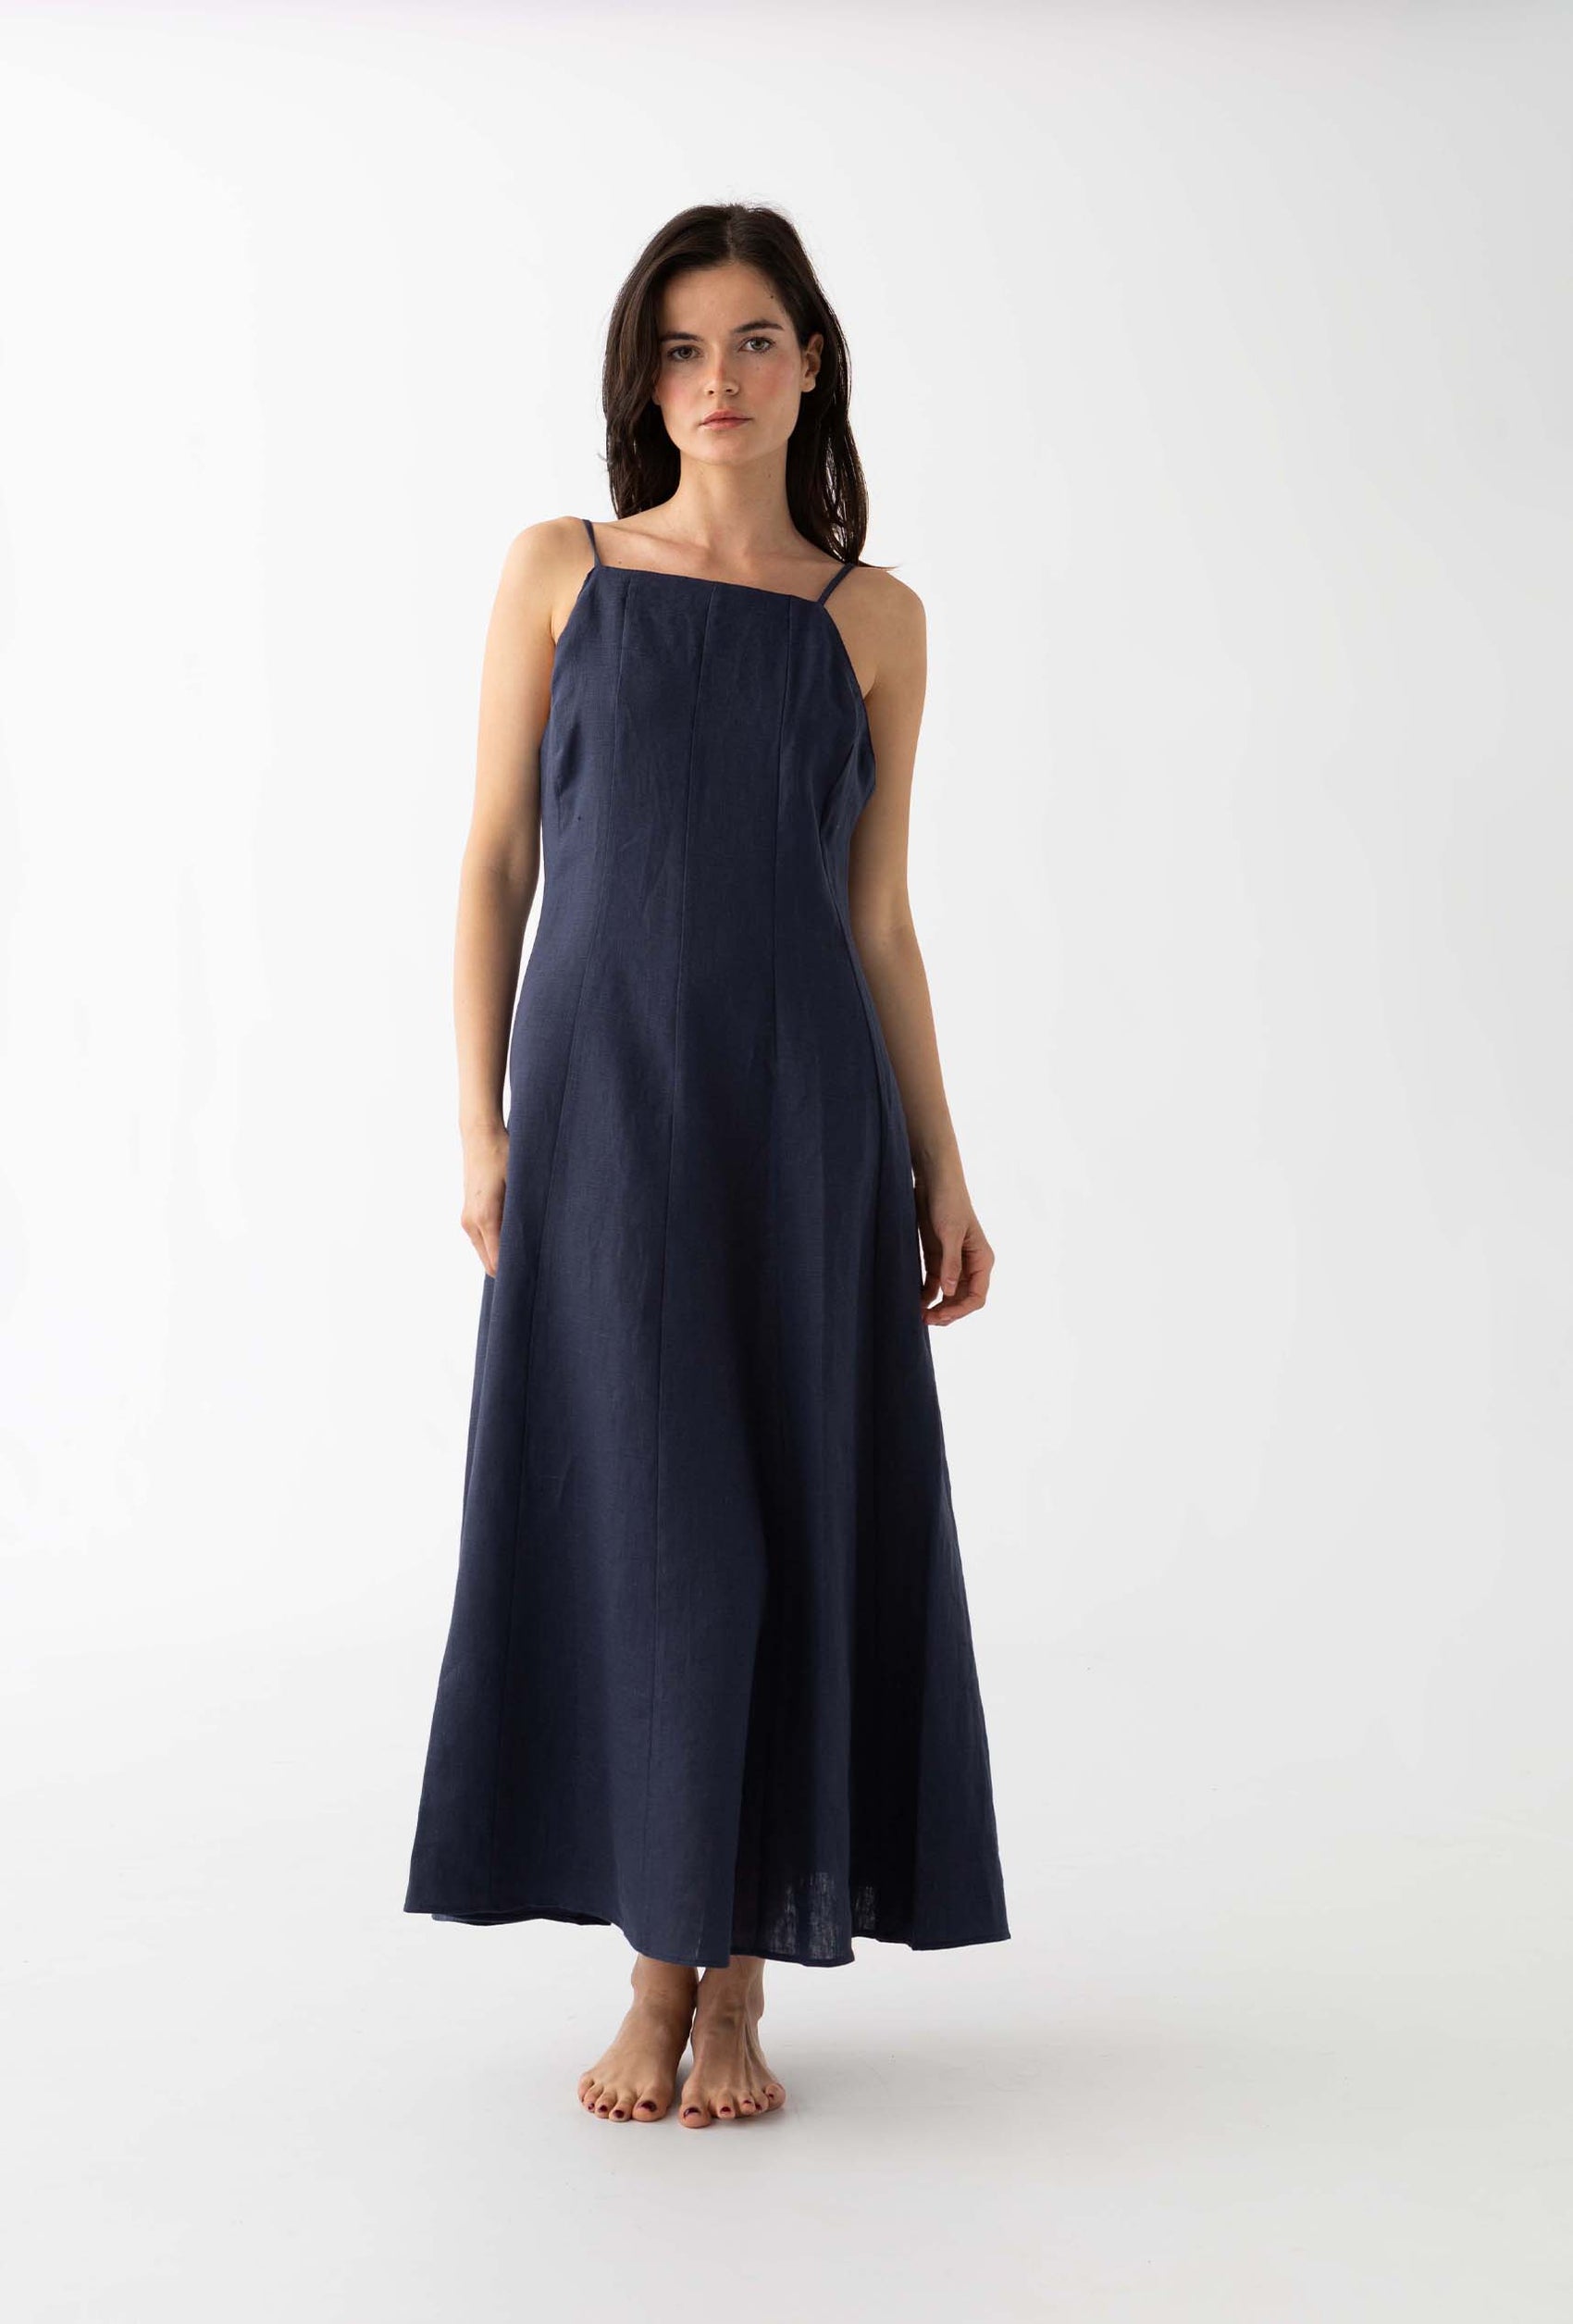 The Linen Dress: Navy